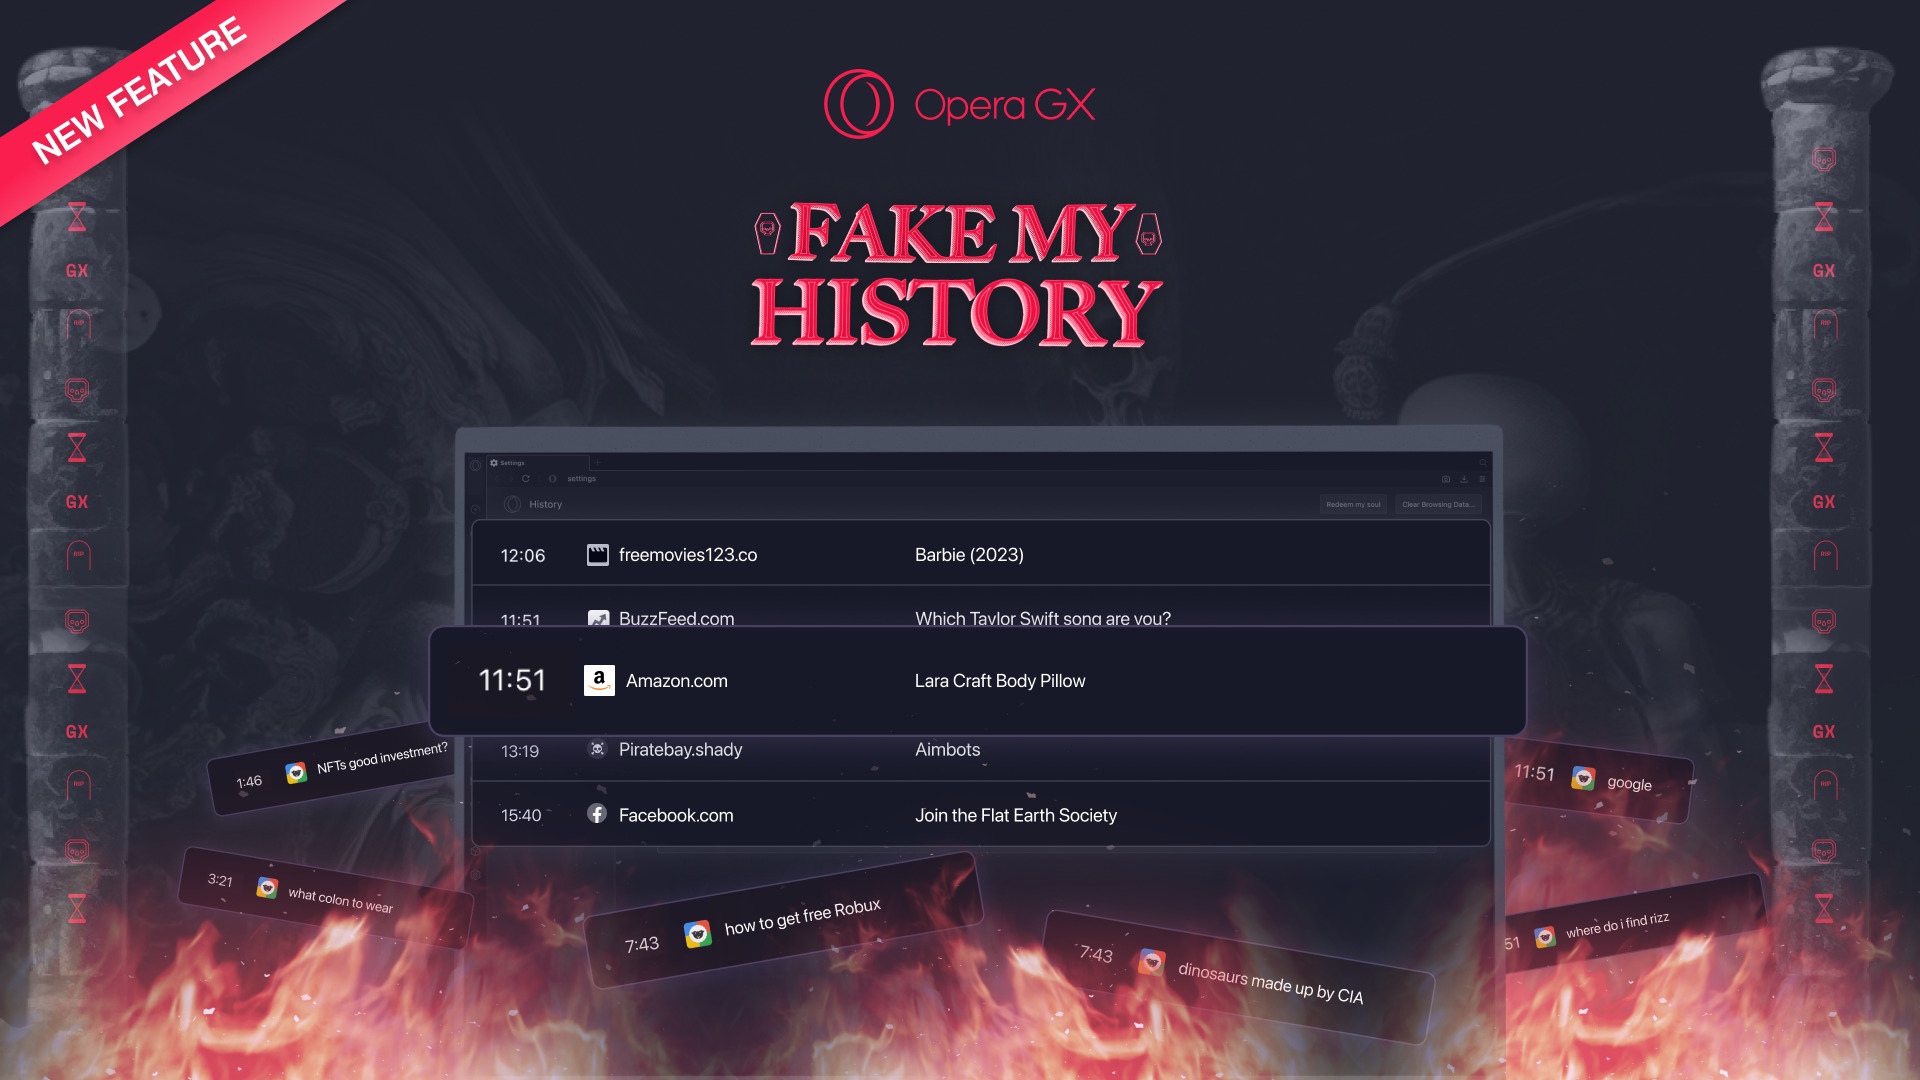 Opera GX oferuje pozbycie się "brudnej przeszłości" i wyczyszczenie historii w przypadku śmierci użytkownika